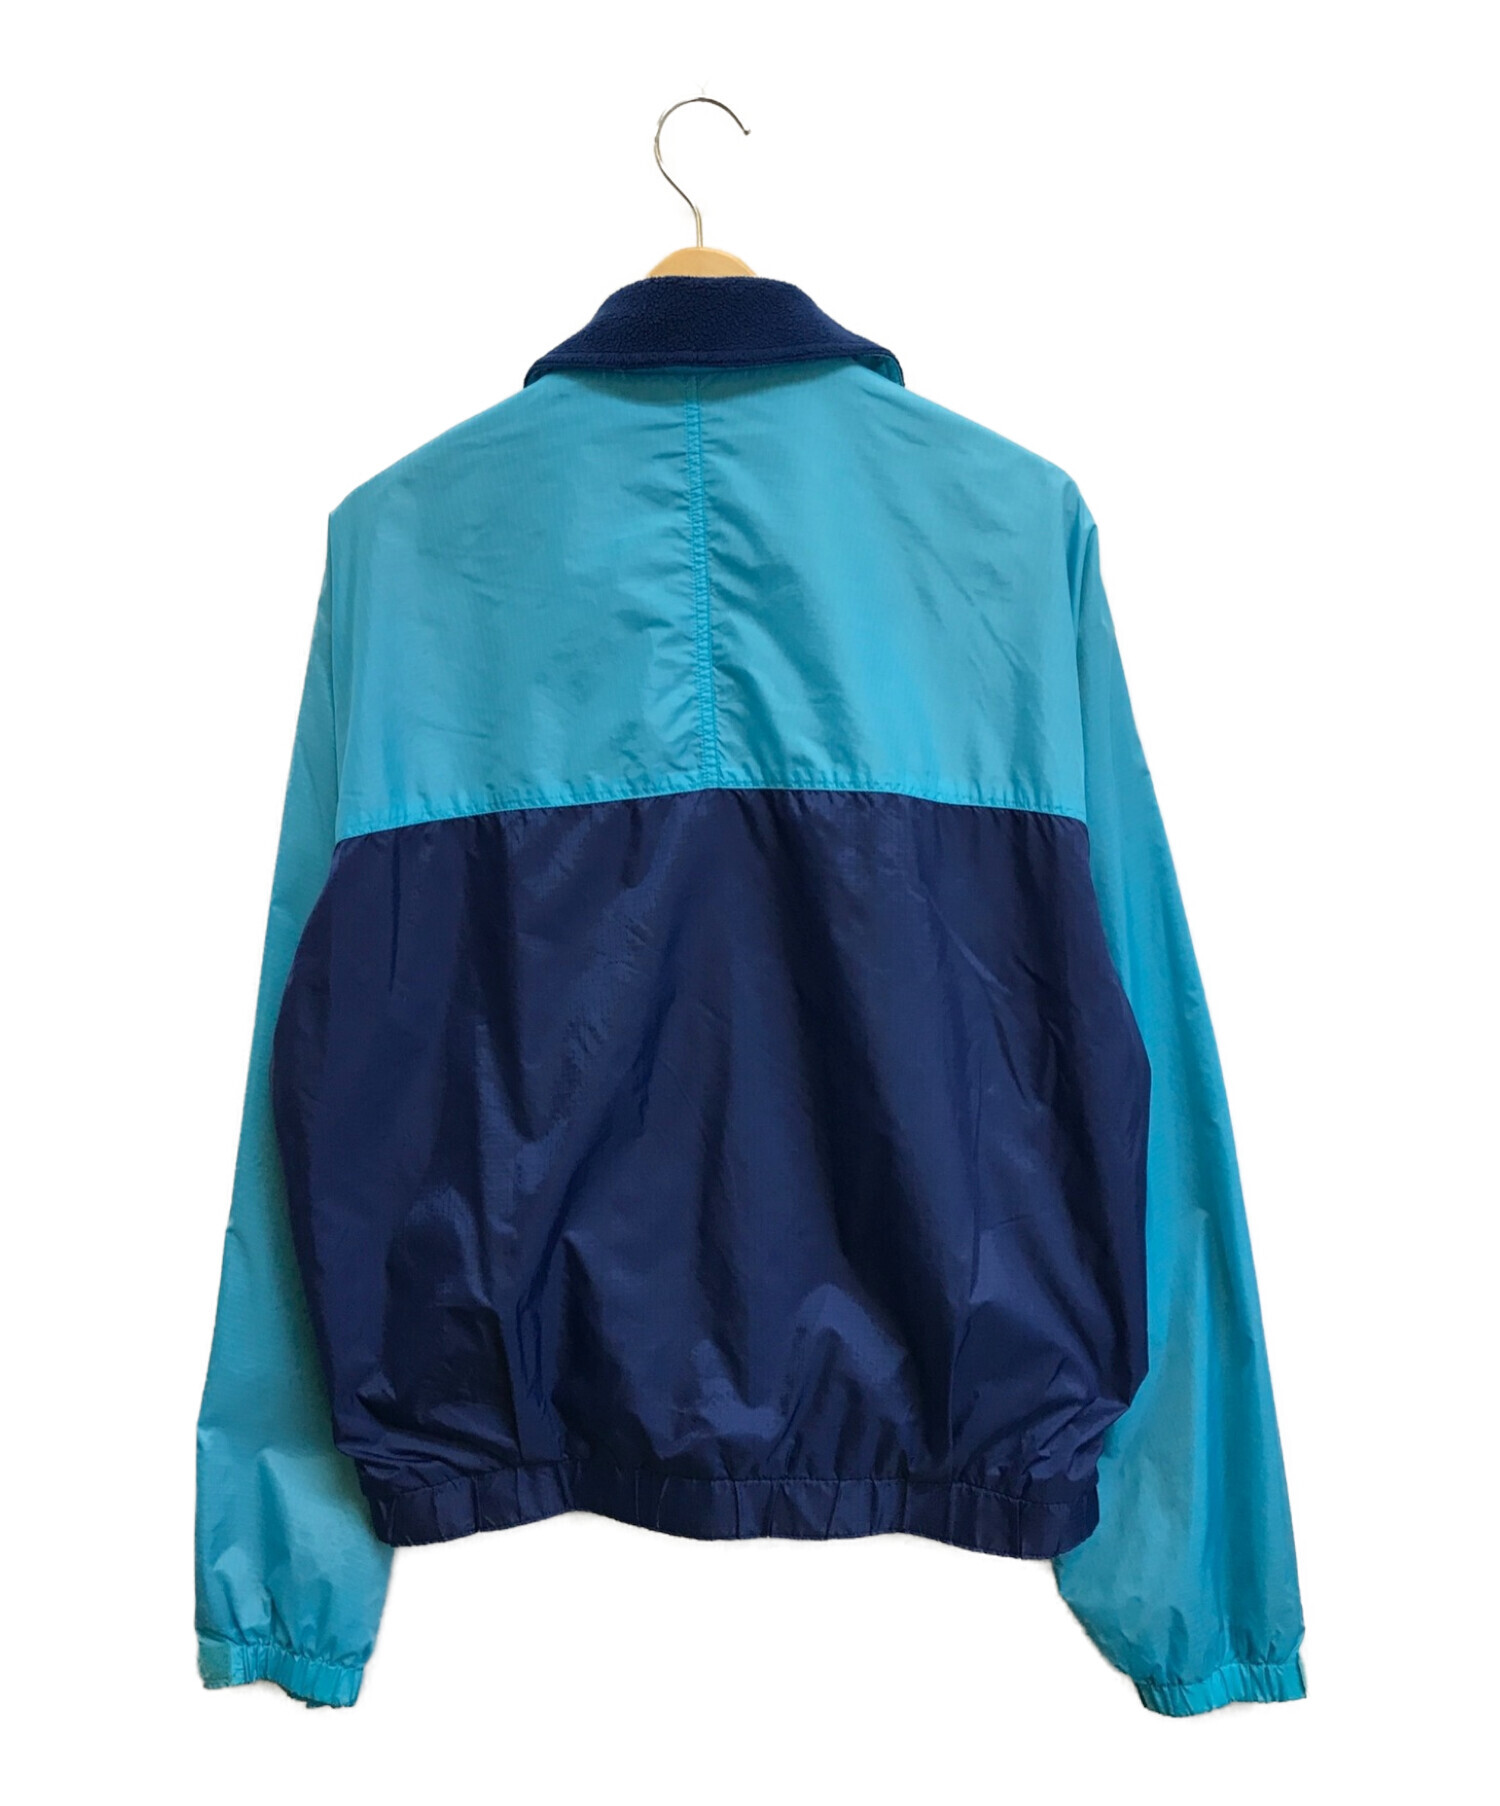 Patagonia (パタゴニア) 90'sバイカラージャケット ネイビー×ブルー サイズ:S